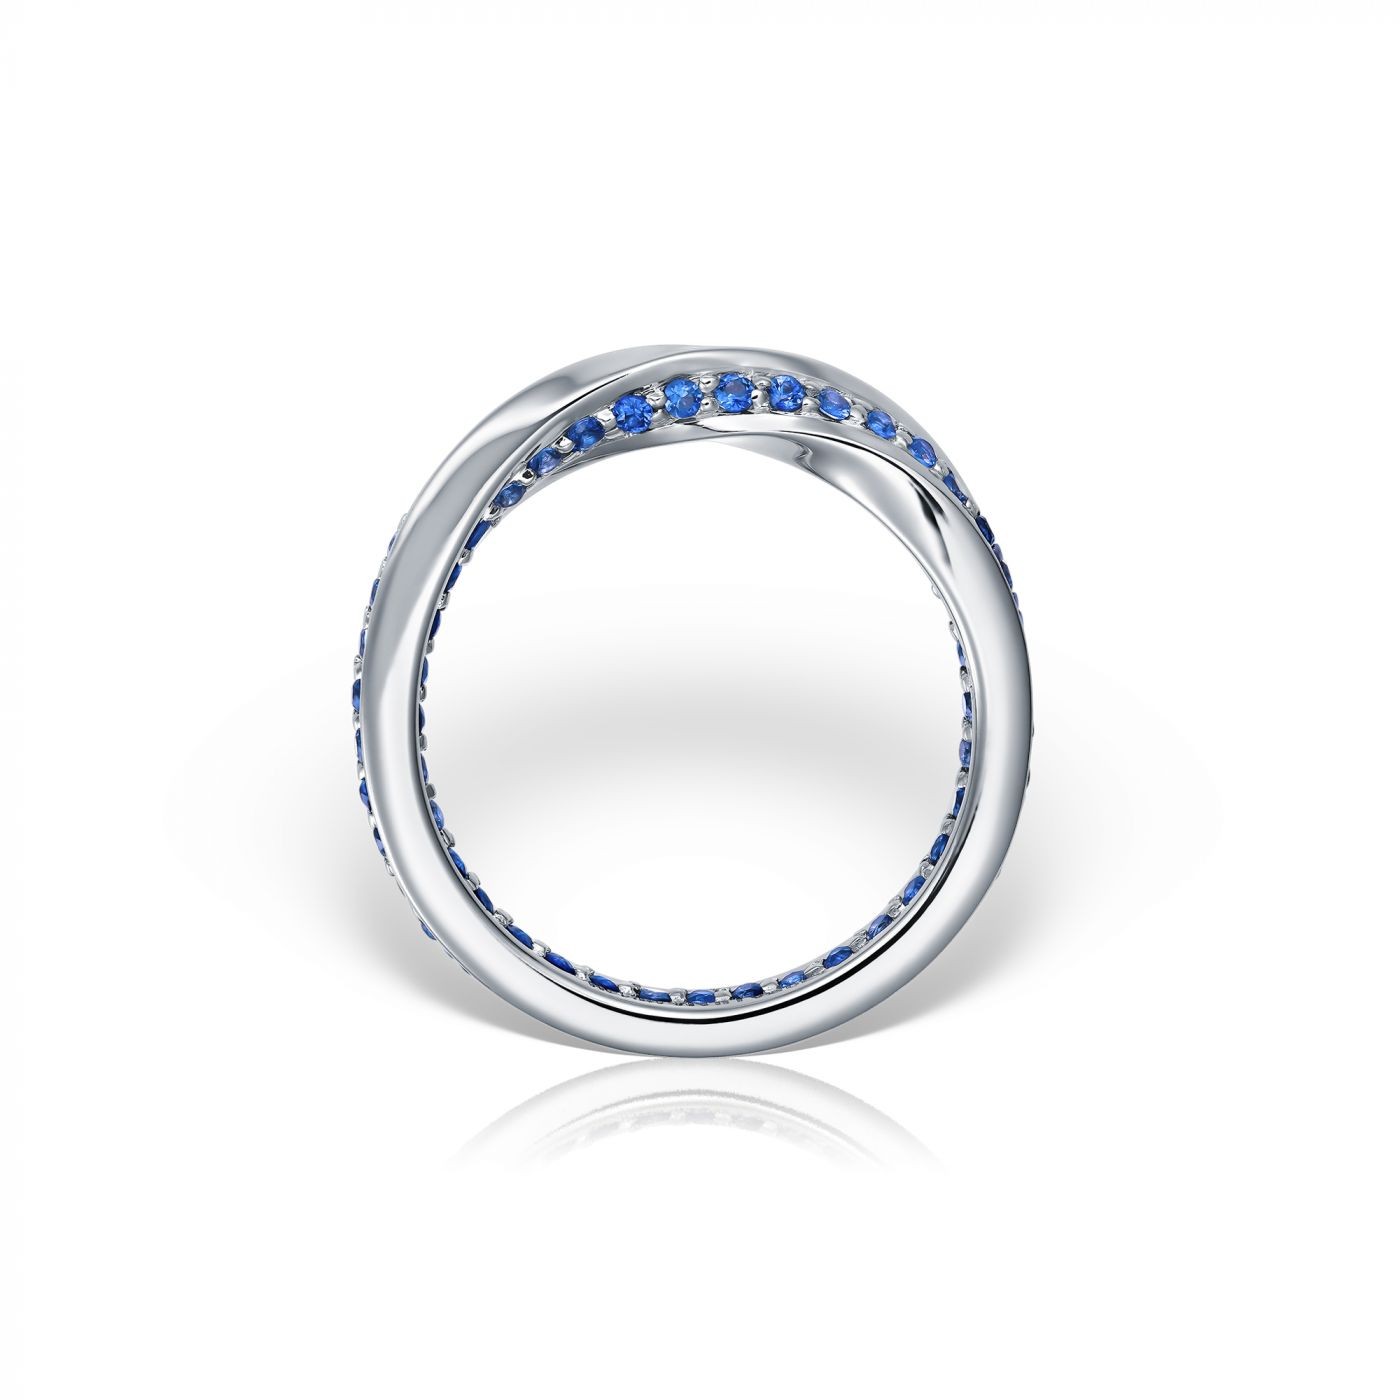 Inel Mobius - Petite din aur alb 18K cu safire albastre